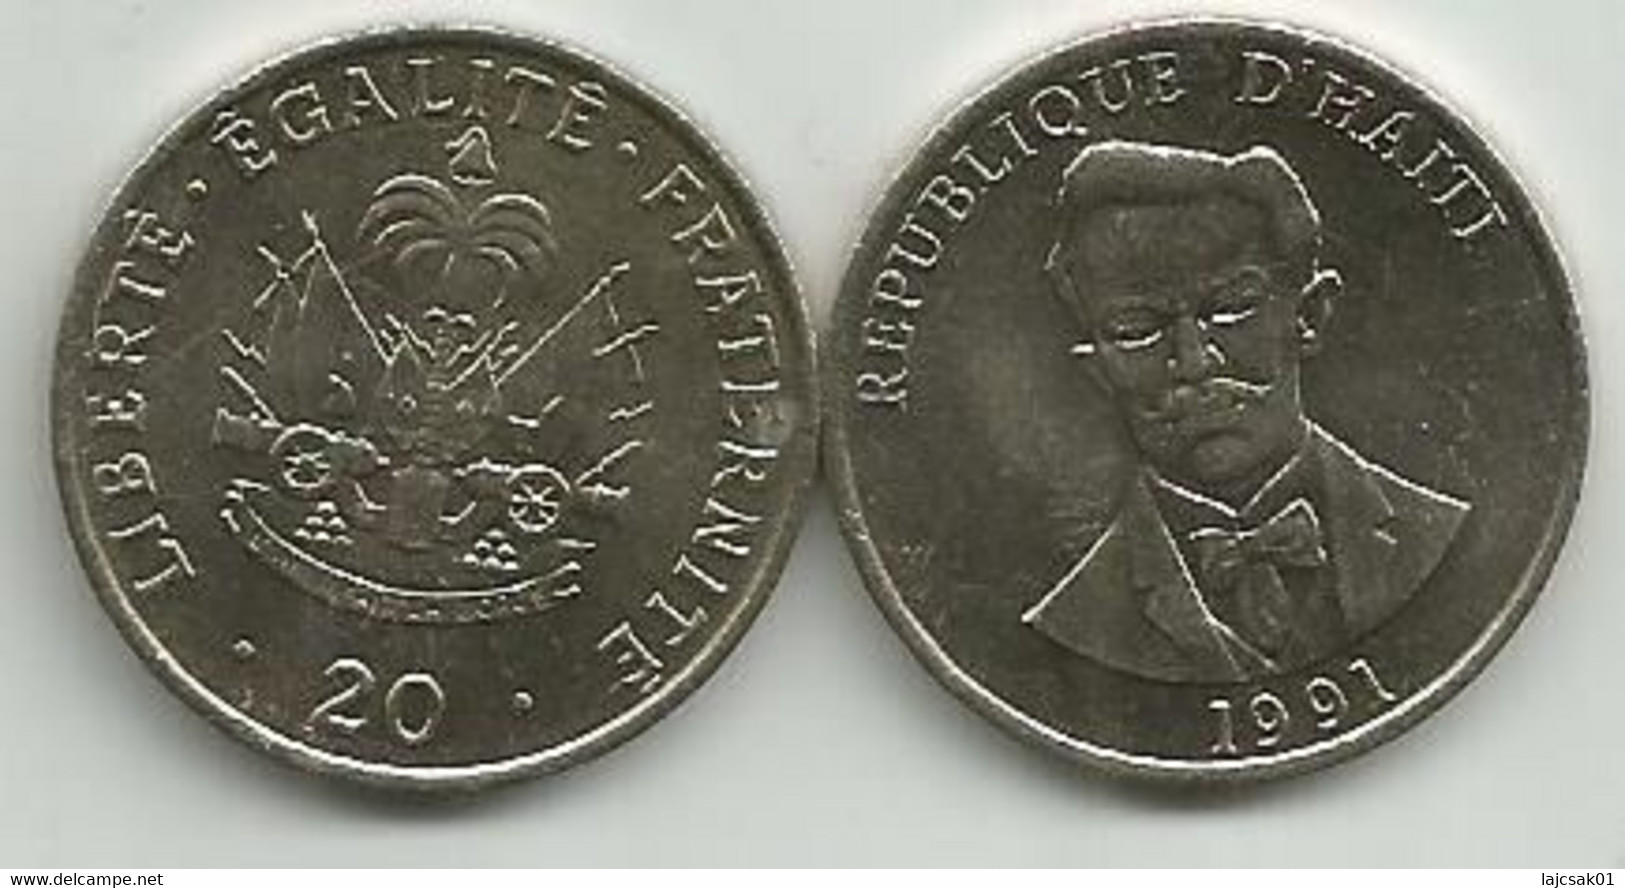 Haiti 20 Centimes 1991. High Grade - Haiti